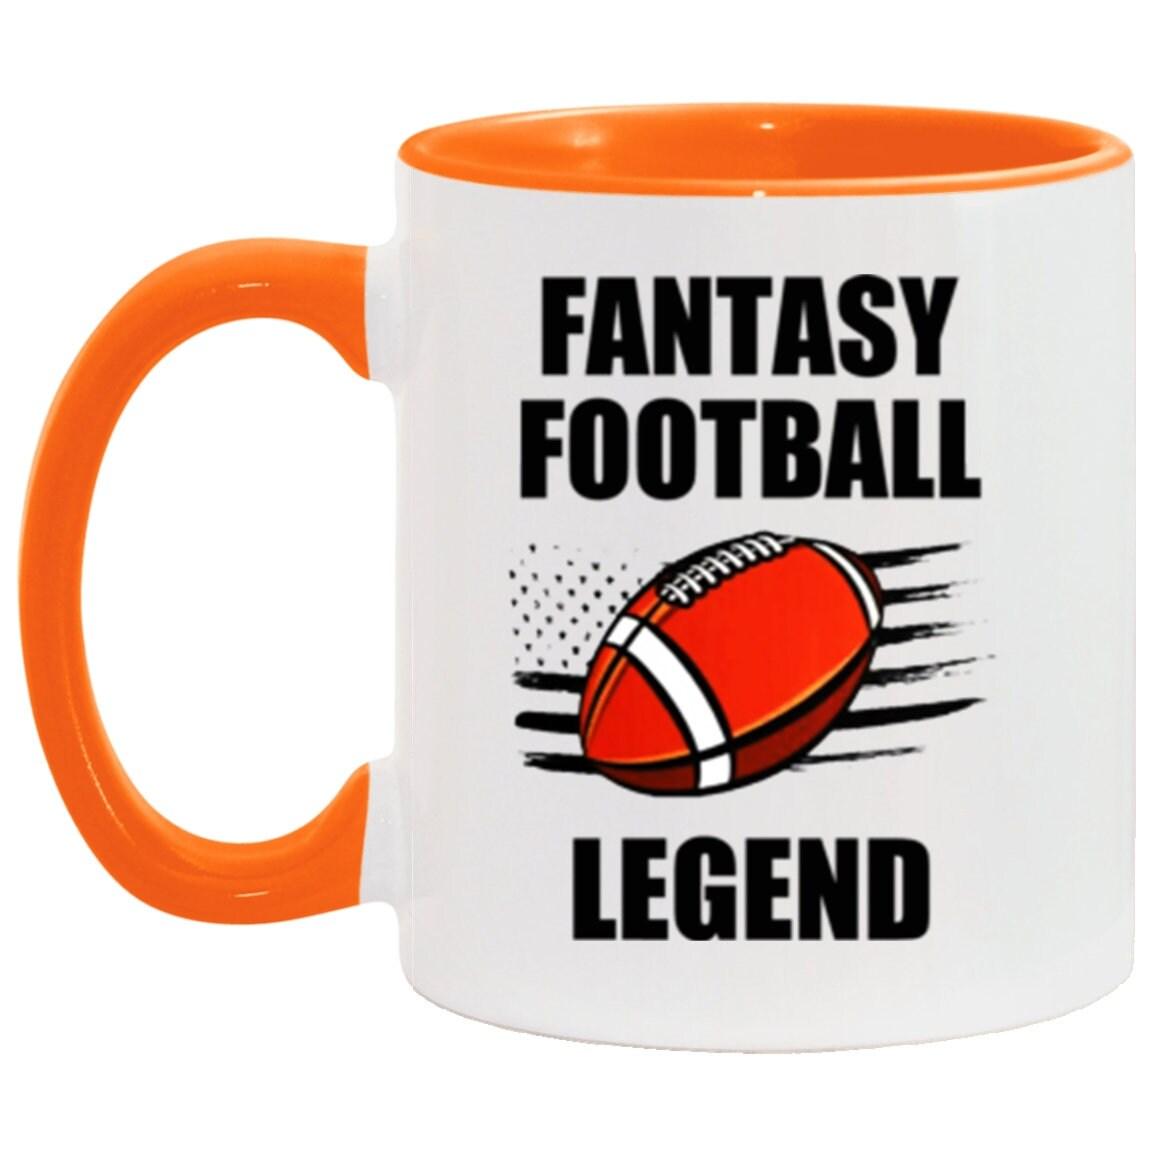 Taza con acento de leyenda del fútbol de fantasía, taza de fútbol FFL divertida, regalo de taza de deportes de fantasía de 11 oz. Taza decorativa, taza de cerámica de fútbol de fantasía - plusminusco.com